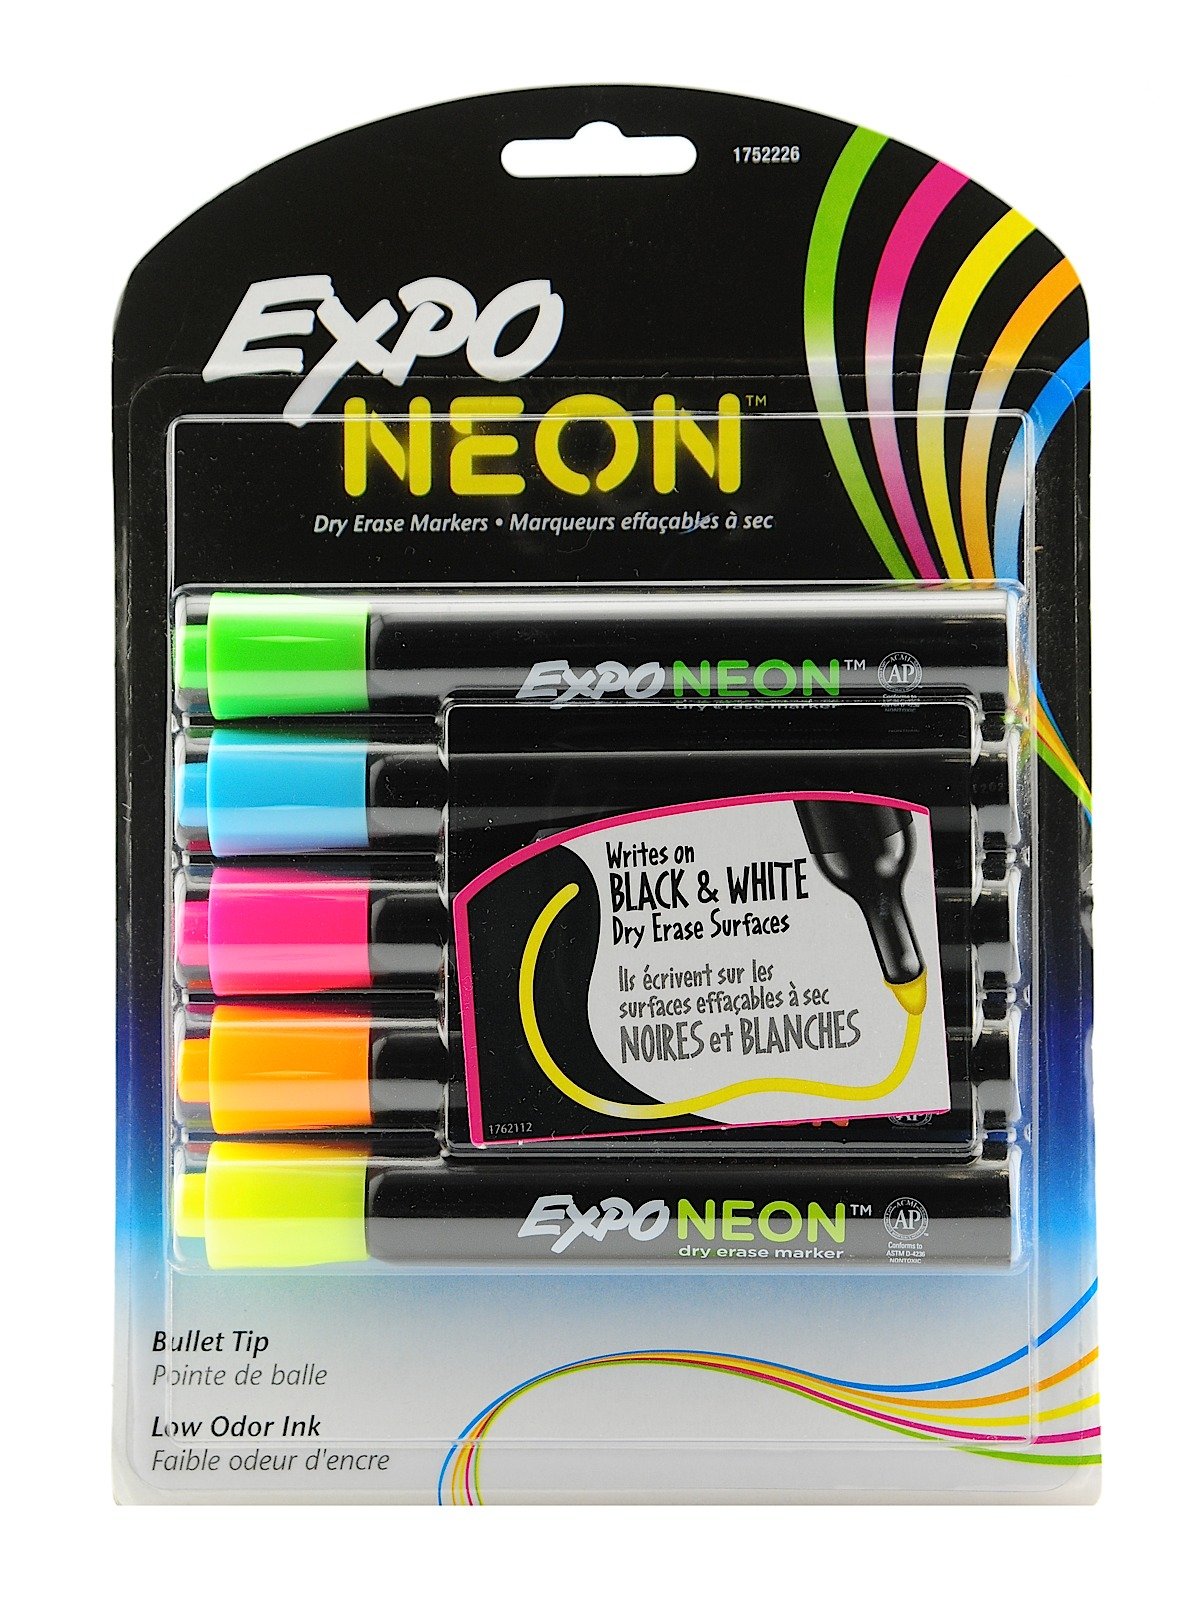 Expo Neon Bullet Tip Dry Eraser Marker Sets